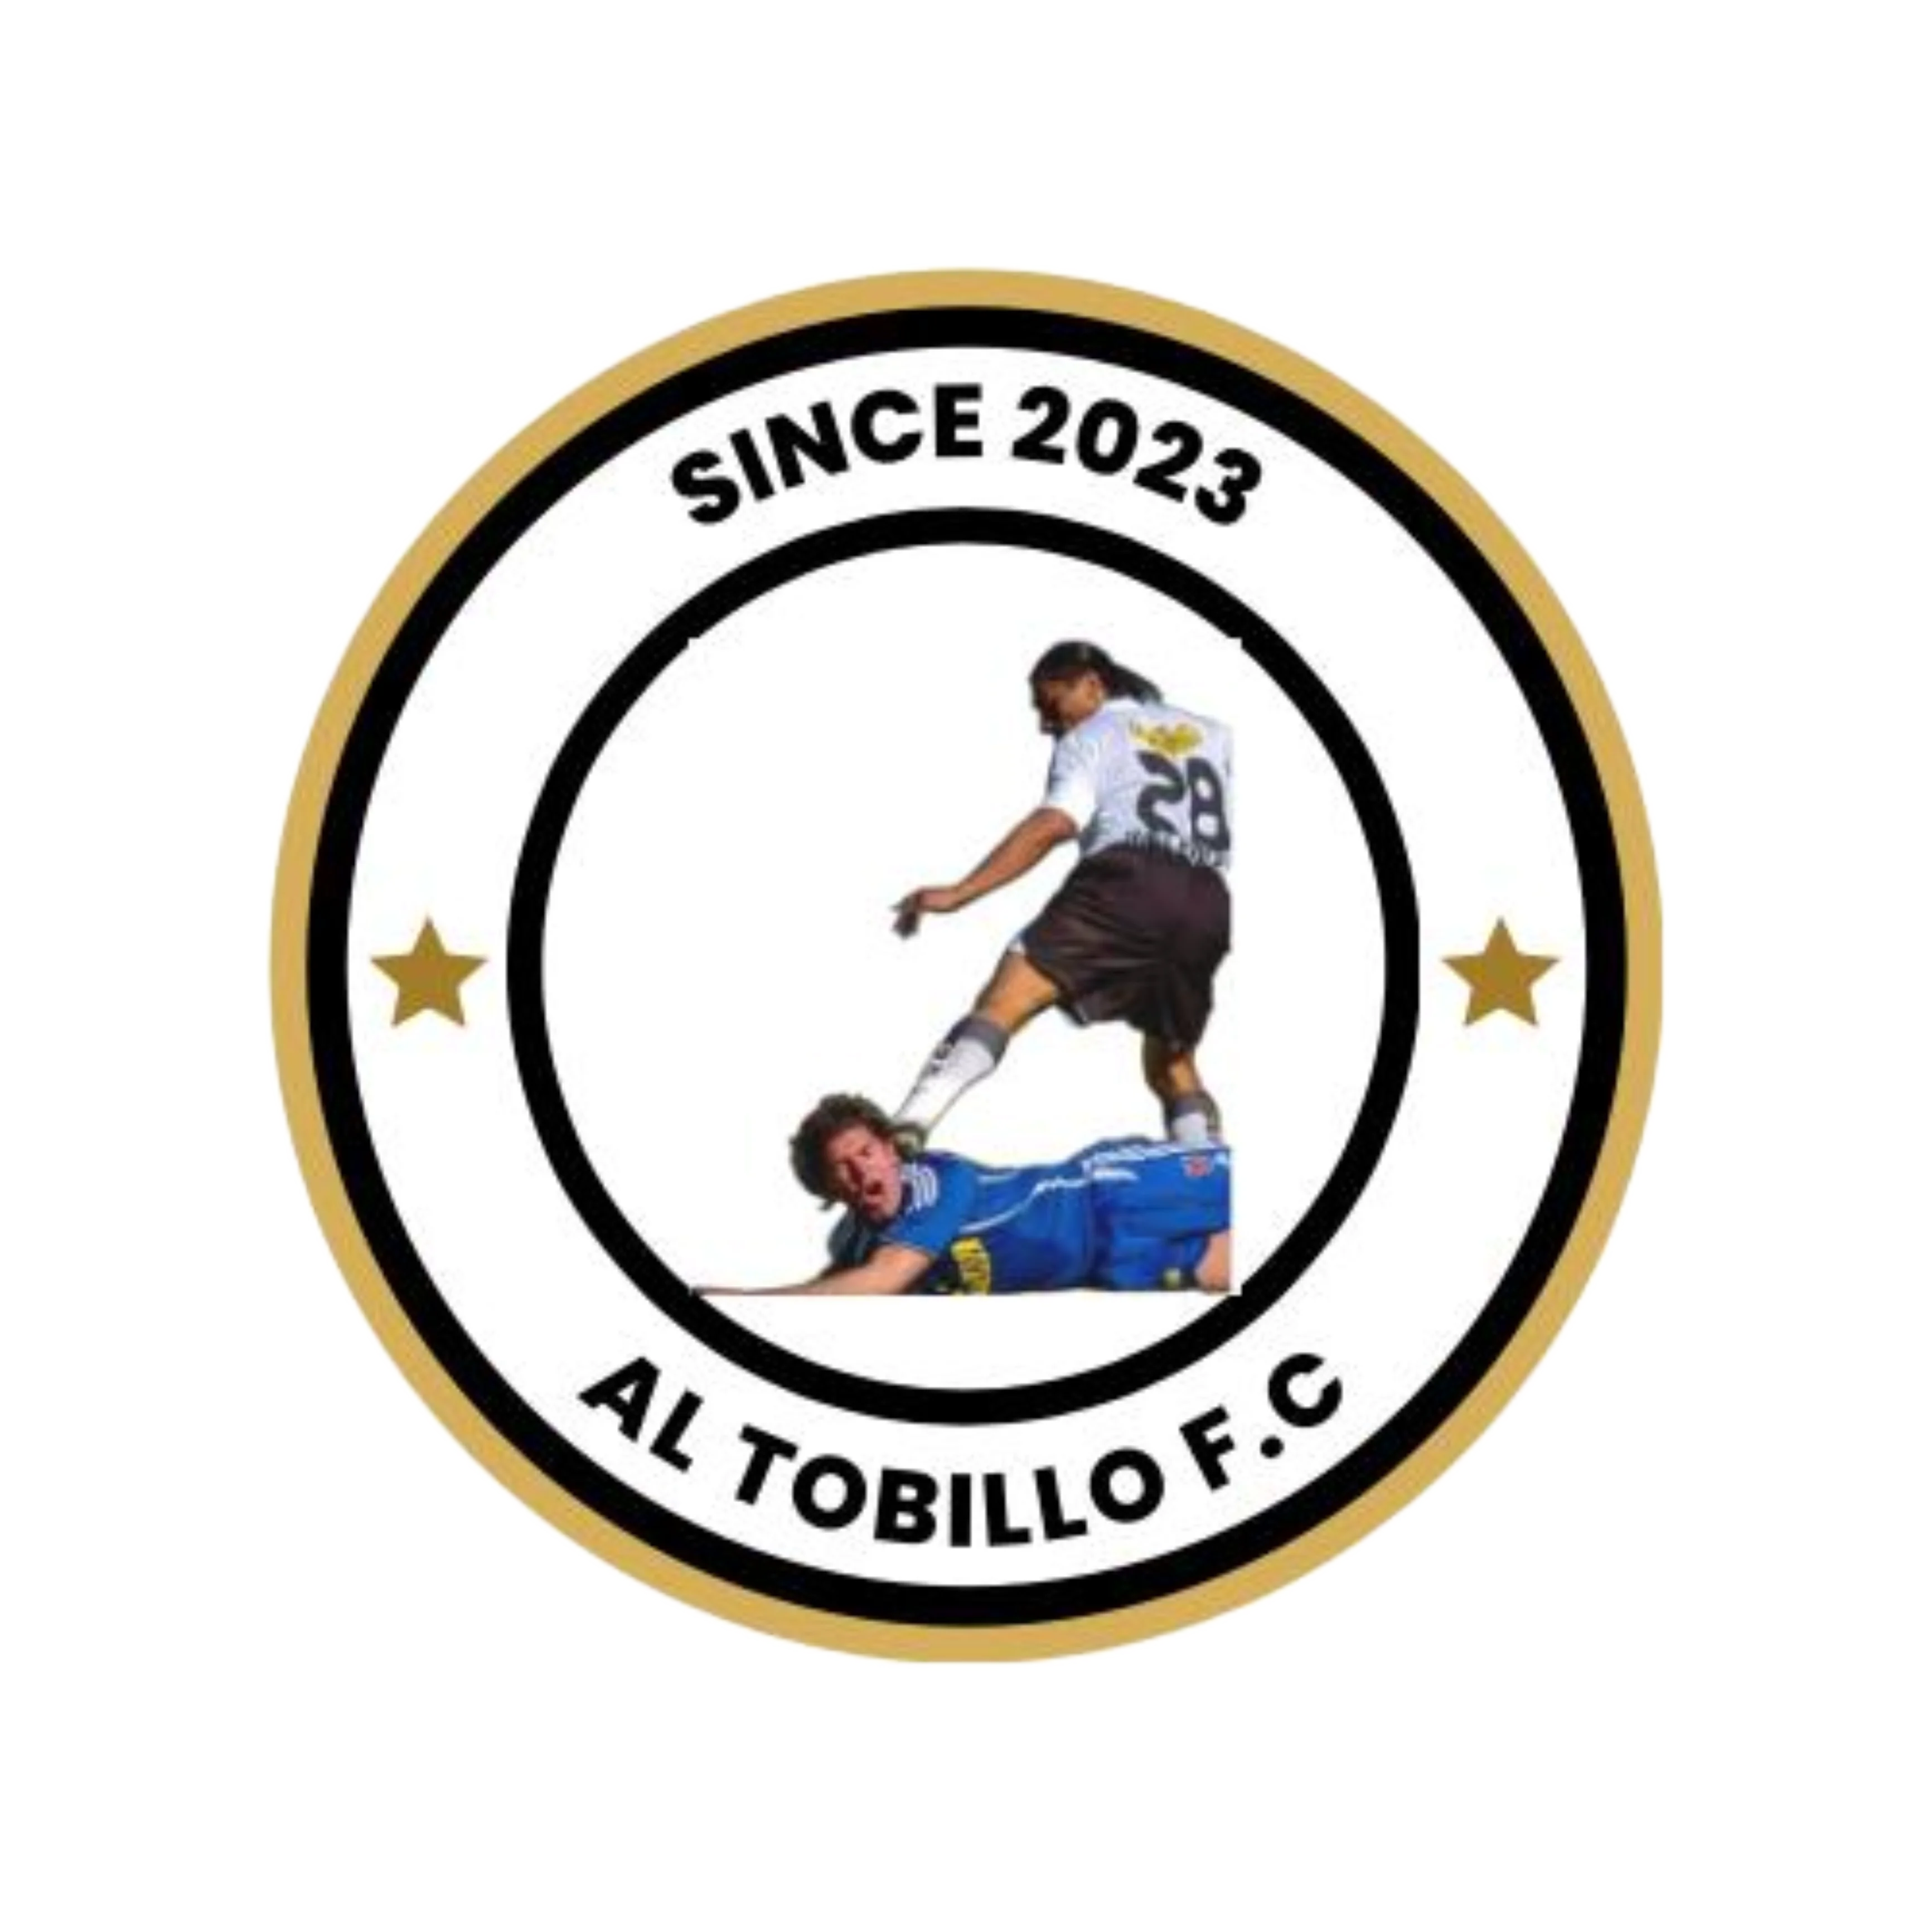 Al Tobillo